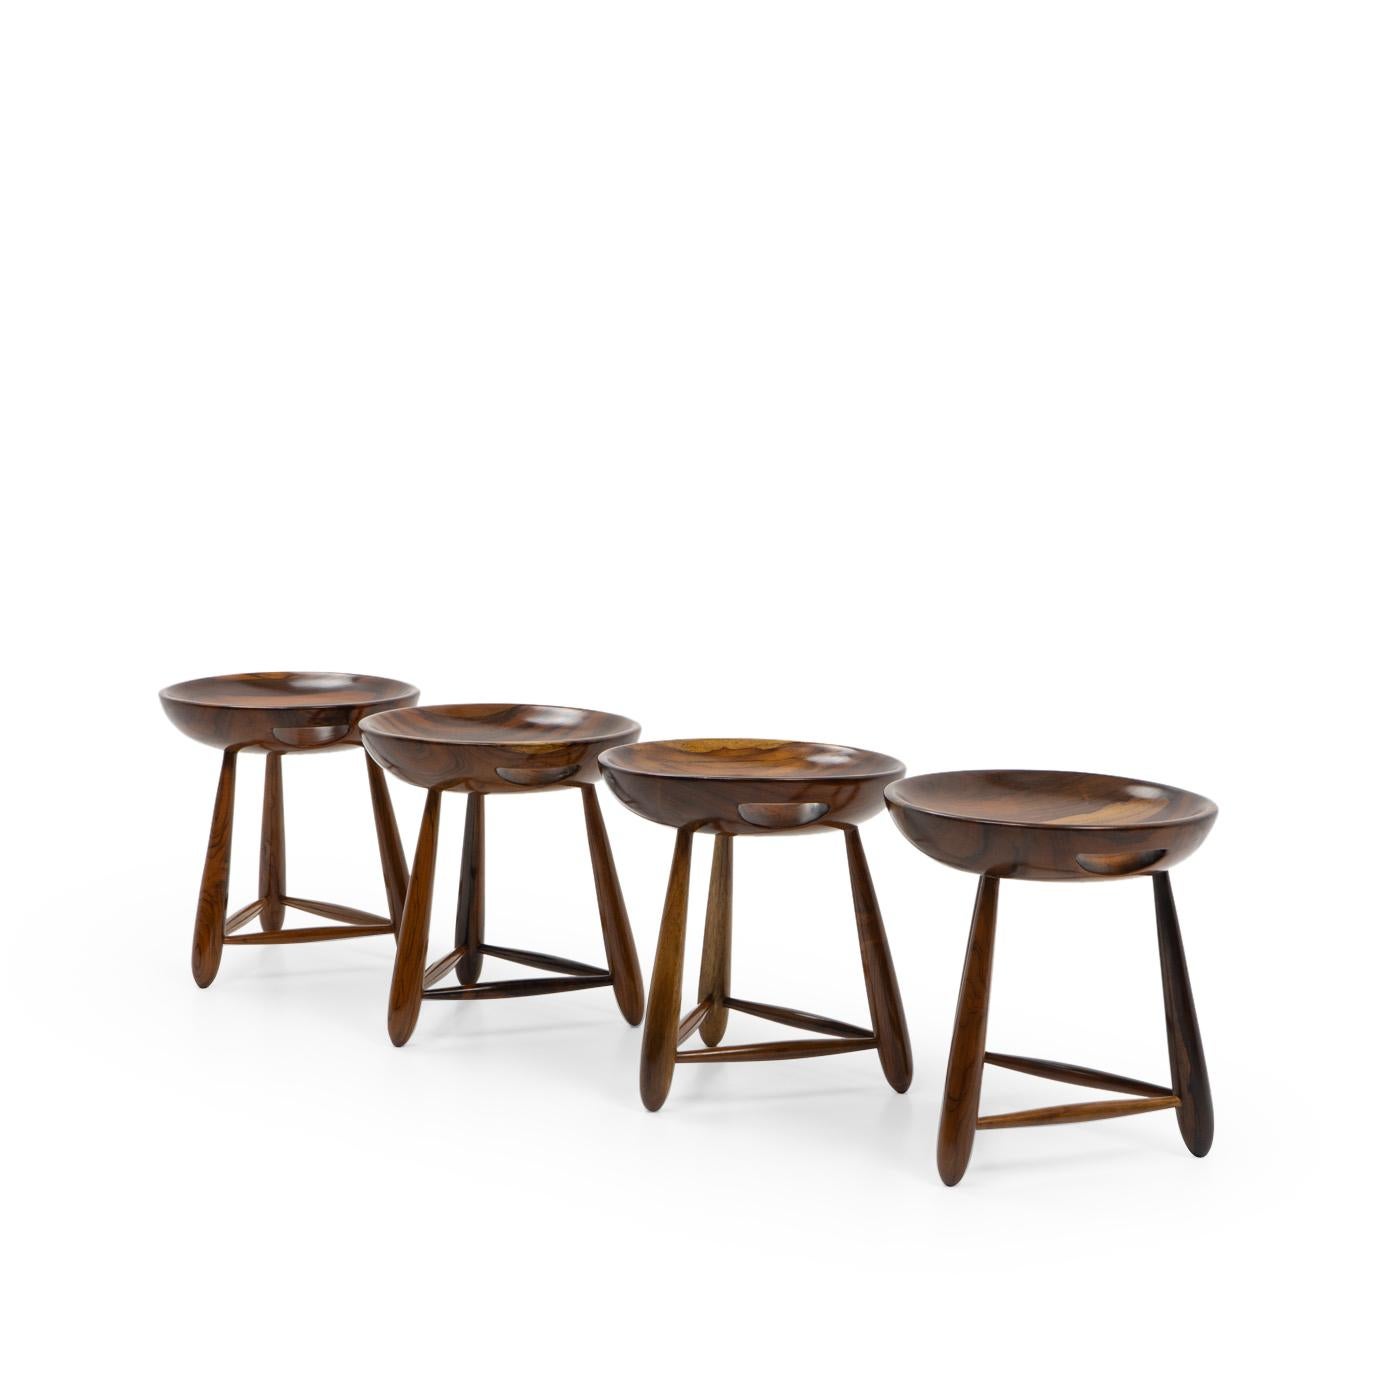 Sergio Rodrigues a établi la norme pour le mobilier moderne au Brésil dans les années 1950. Ses œuvres sont devenues une référence pour le design brésilien, qui utilise souvent des essences de bois dur indigènes.

L'un de ses designs les plus